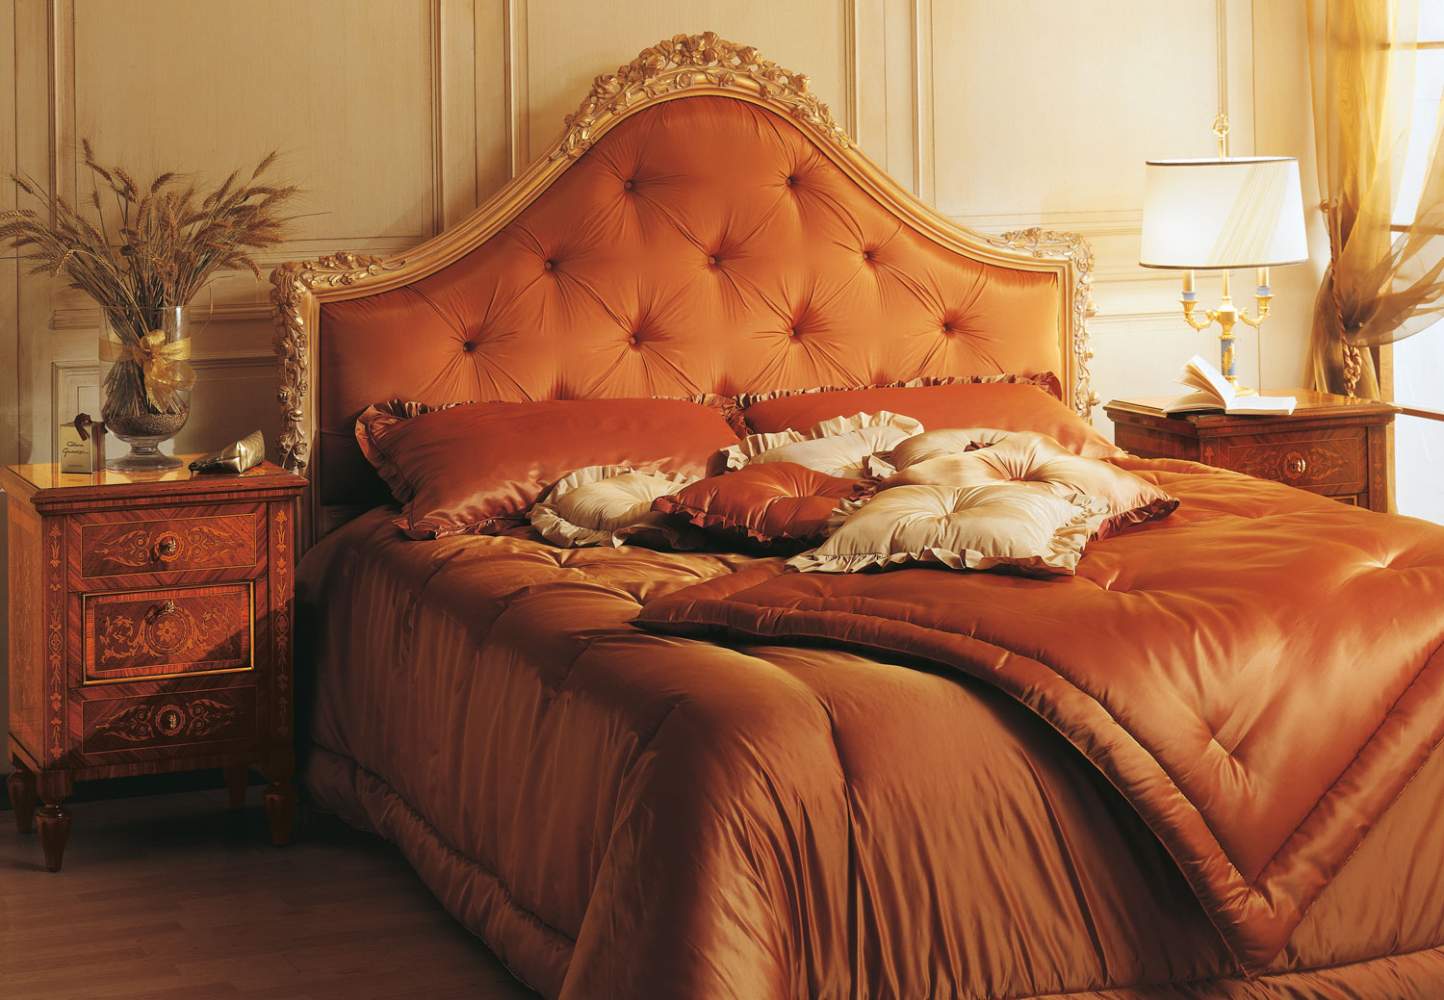 Camera da letto intarsiata della collezione Maggiolini, in legno di noce con intarsi in palissandro